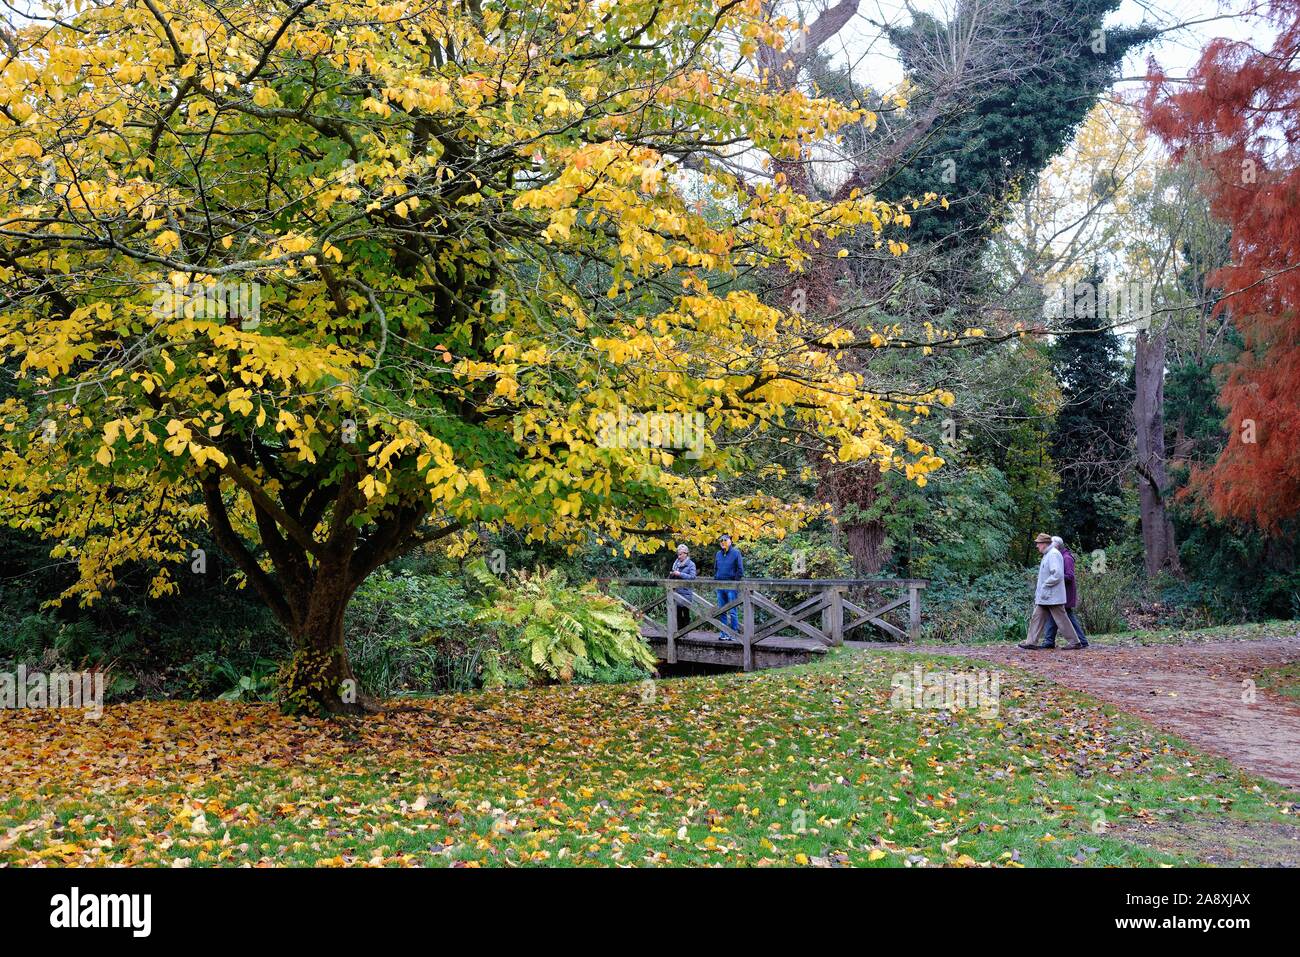 Couleurs automnales dans la Plantation , Bushy Park Greater London England UK Banque D'Images